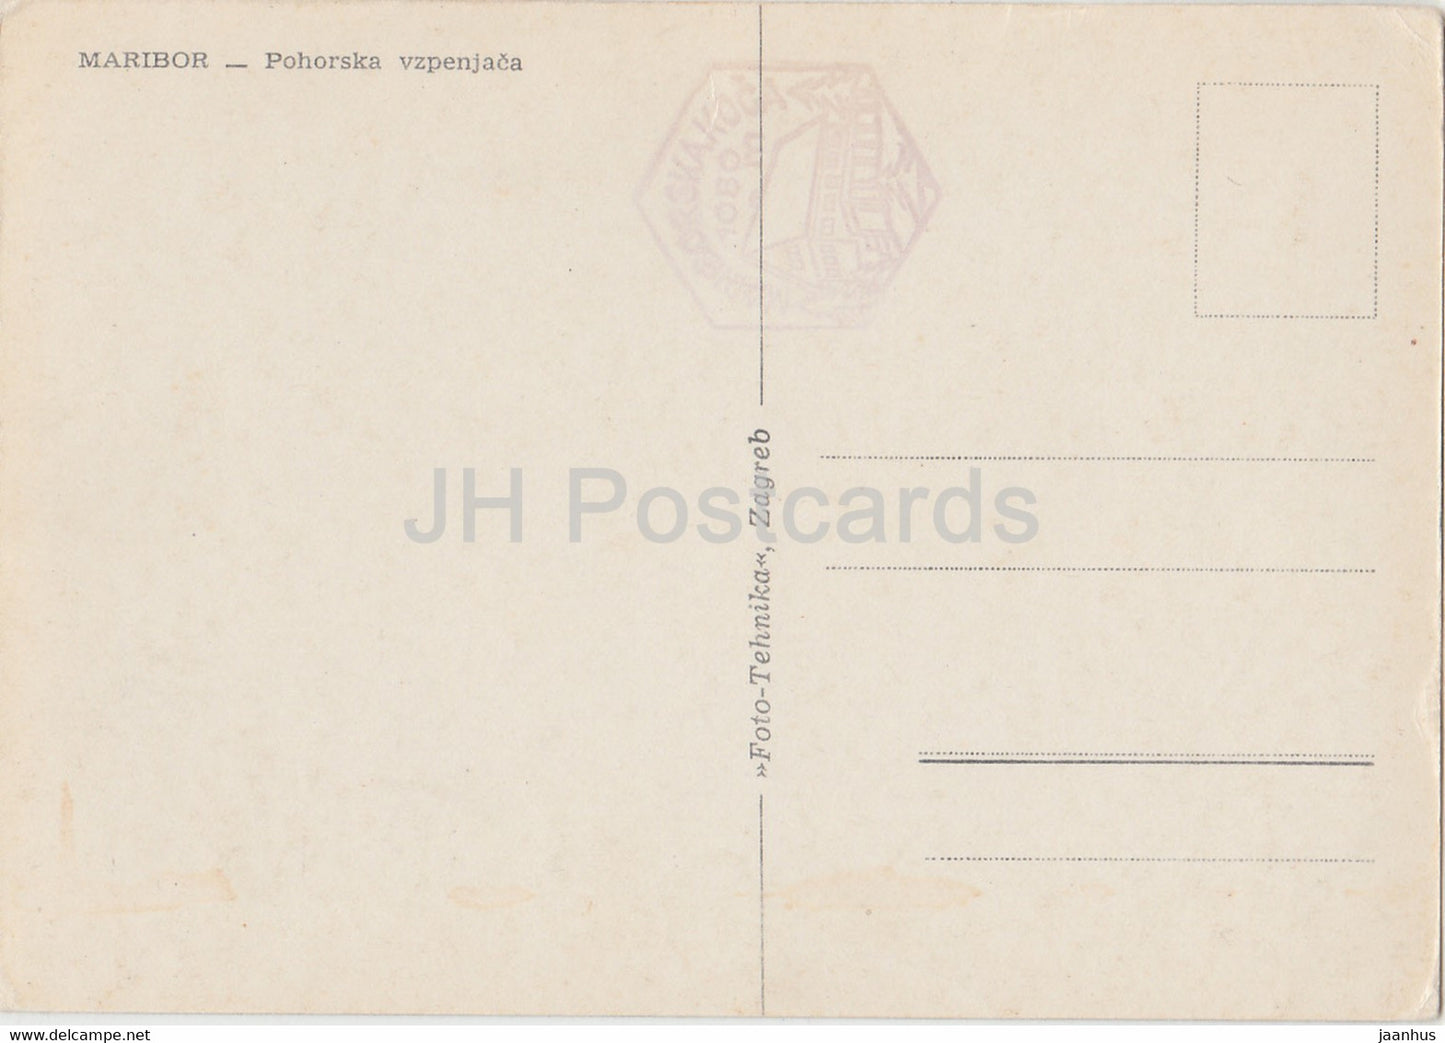 Maribor - Pohorska vzpenjaca - Pohorje - téléphérique - carte postale ancienne - Yougoslavie - Slovénie - utilisé